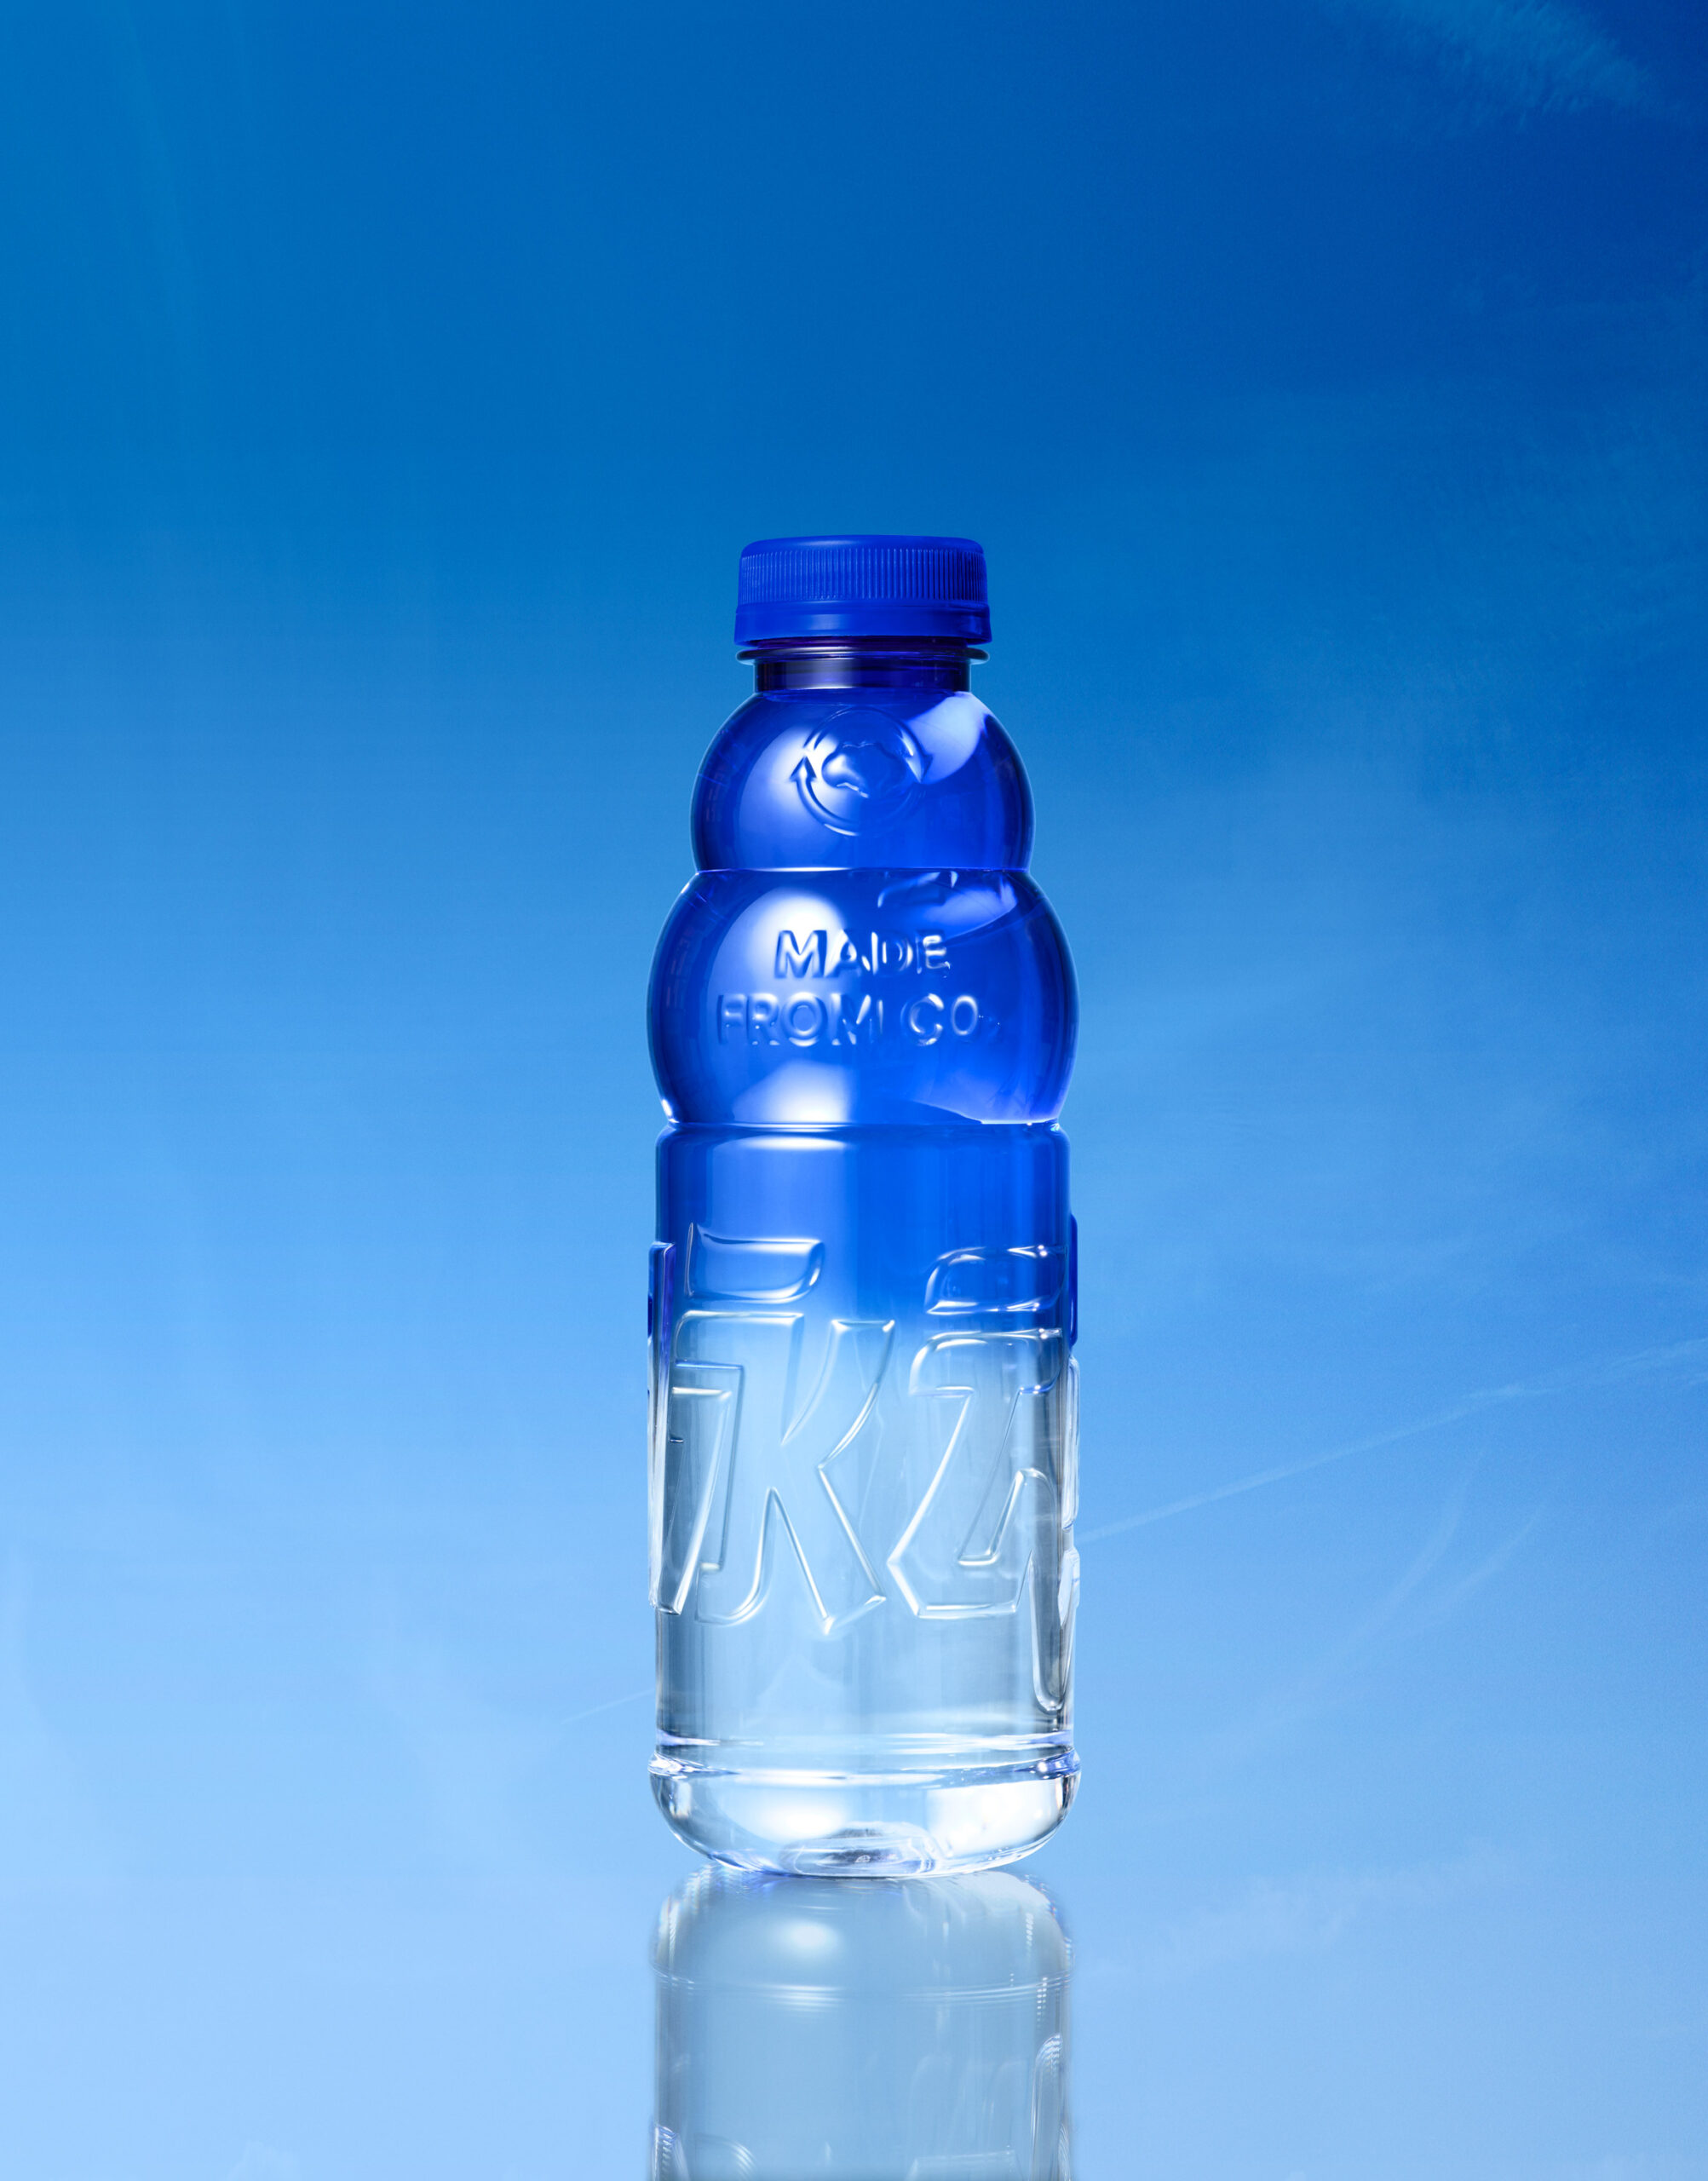 Mizone “Carbon Smart” Concept Bottle